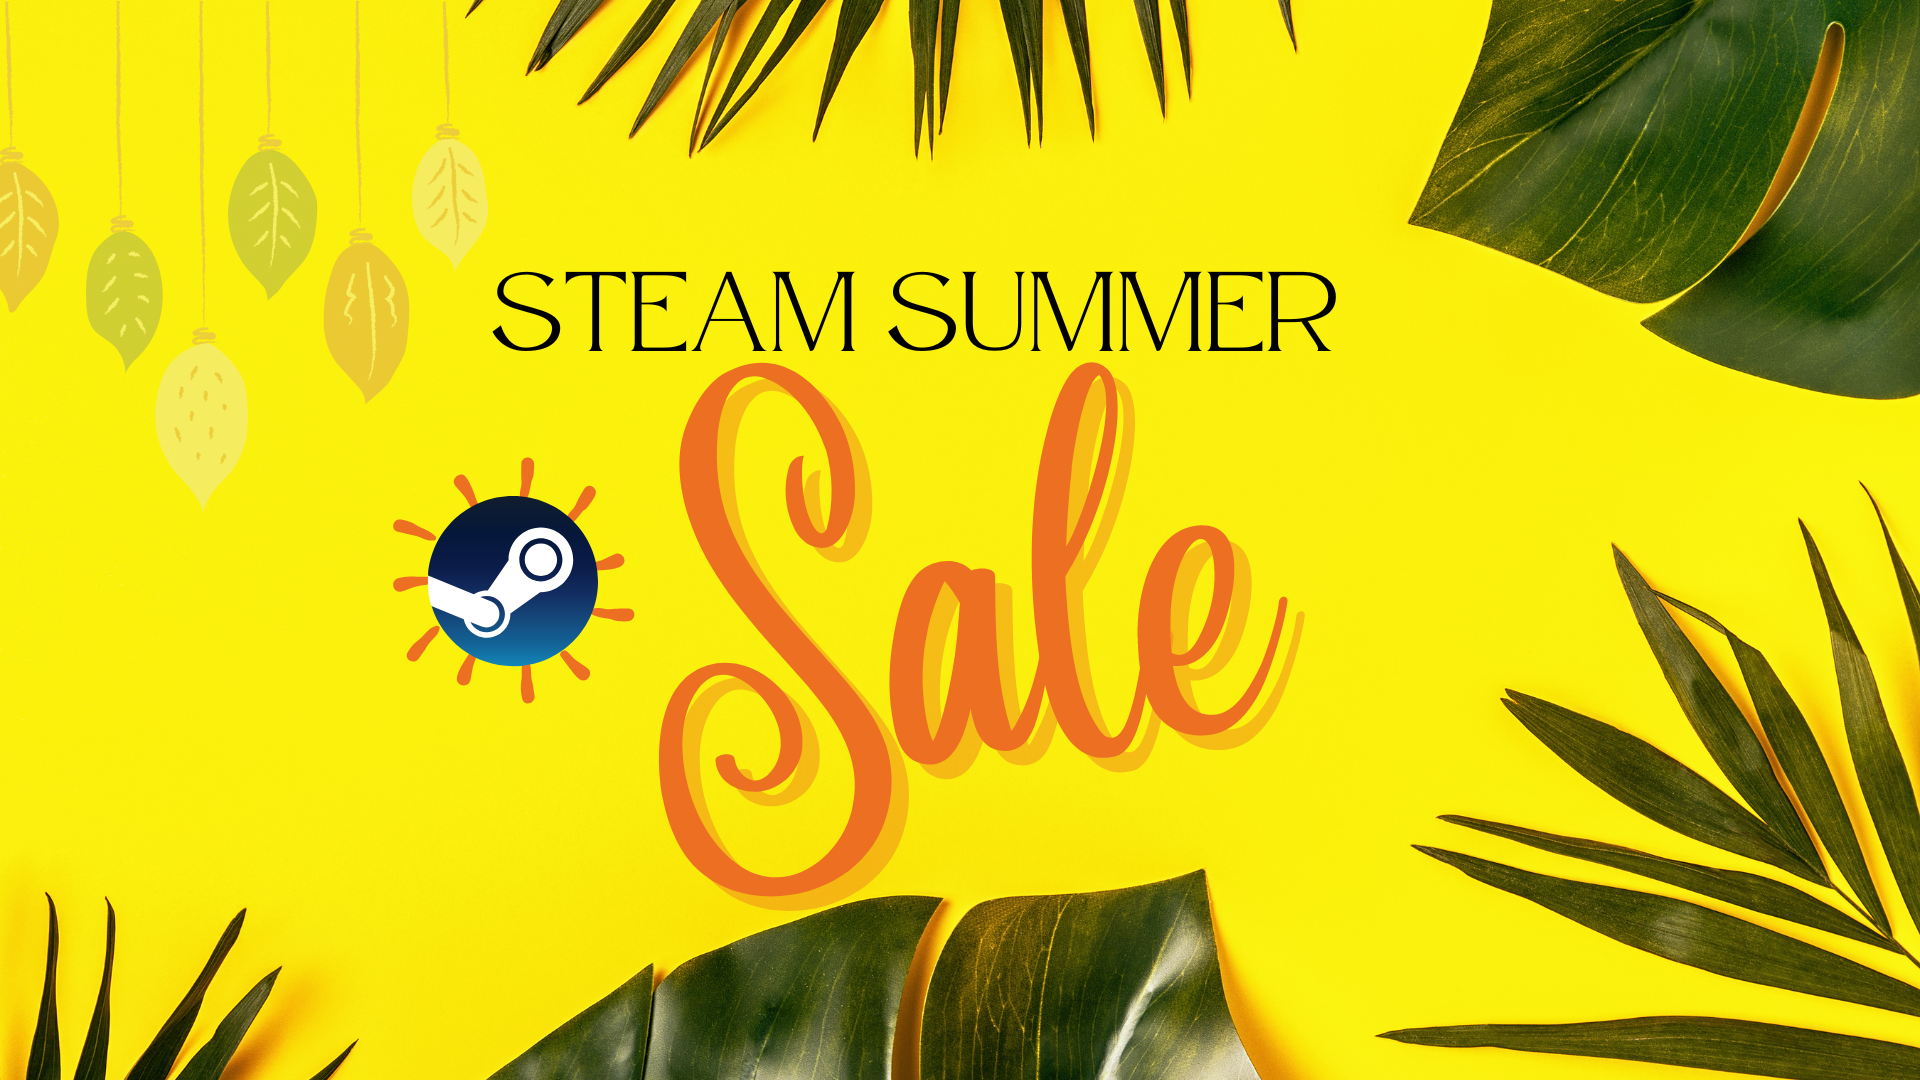 Summer Sale on Steam